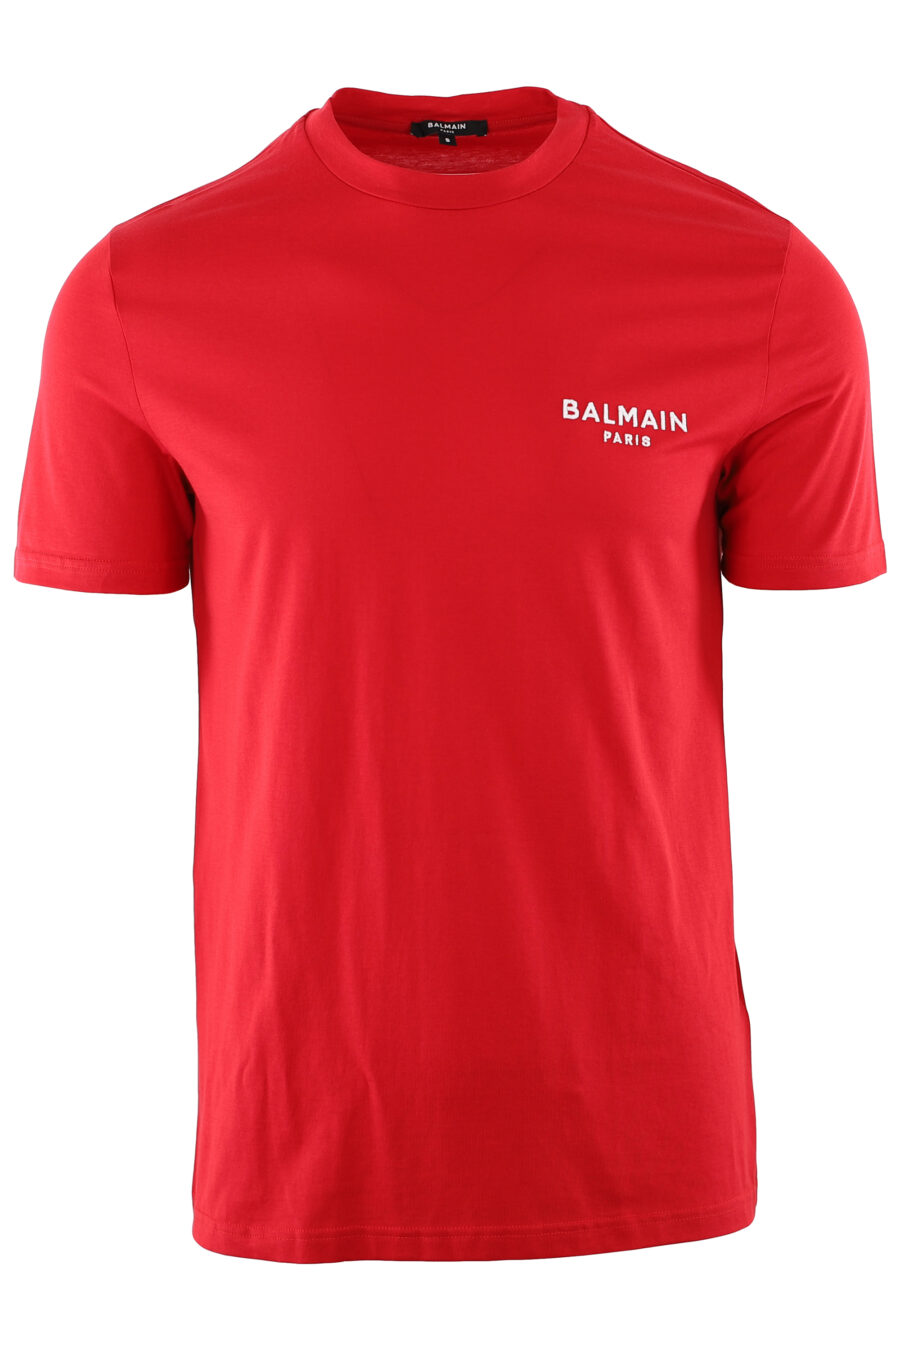 Rotes T-Shirt mit weißem gesticktem Logo - IMG 7409